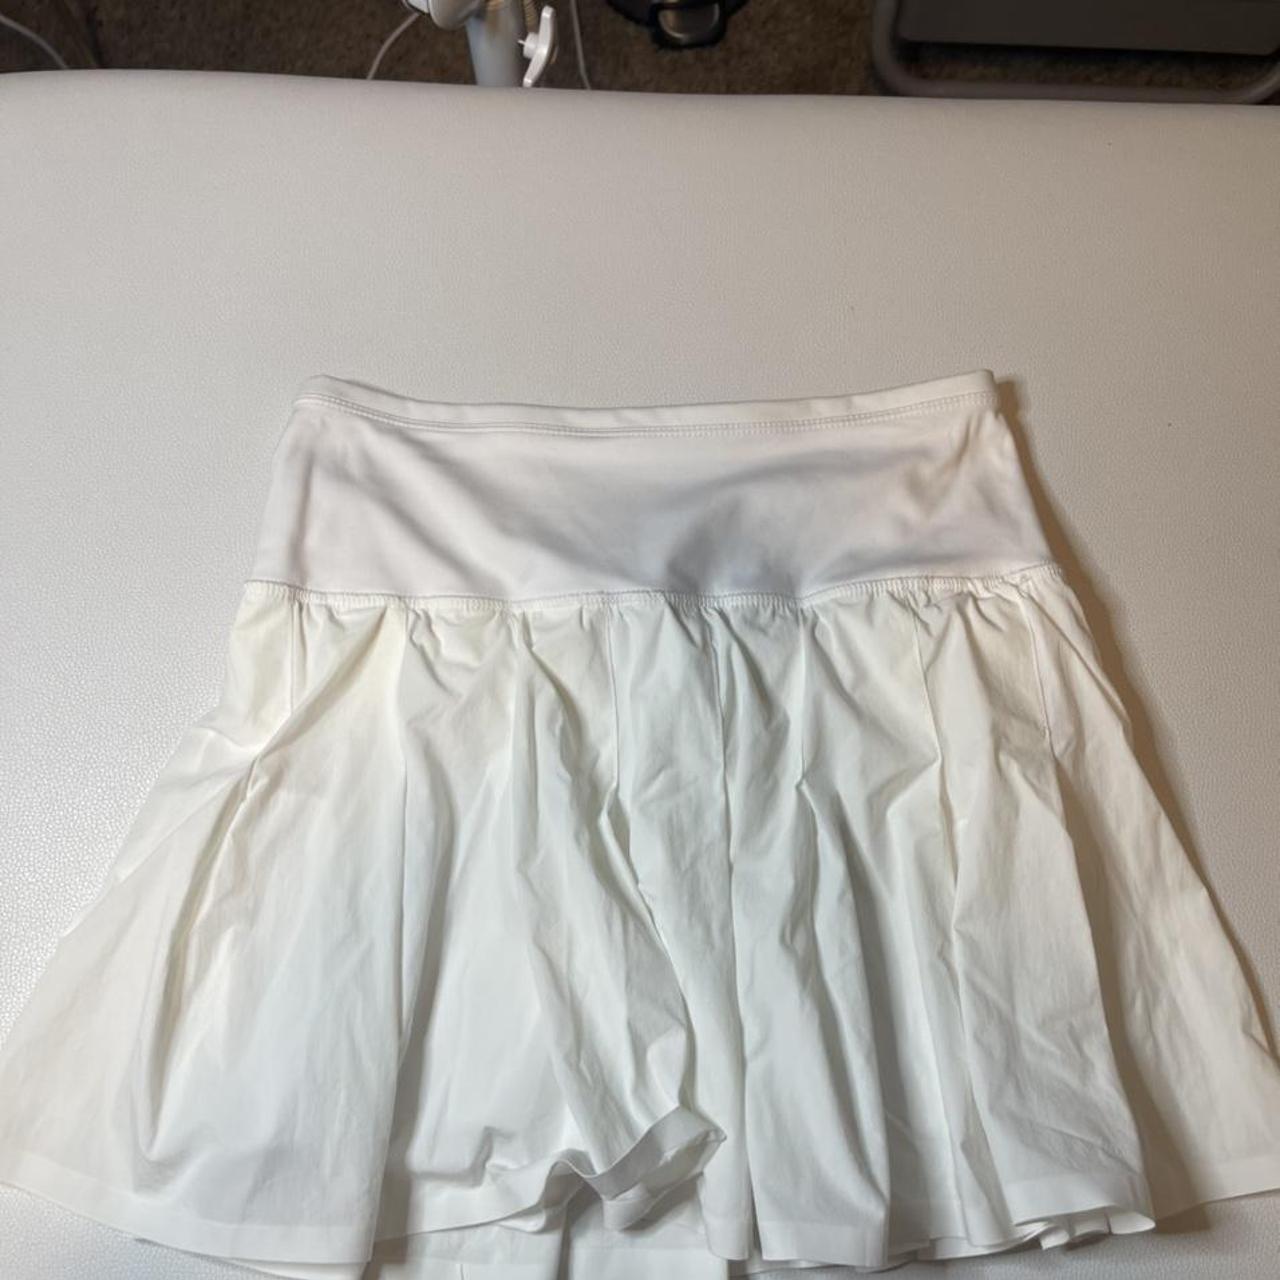 White skirt great material 💚 mini shorts under skirt... - Depop